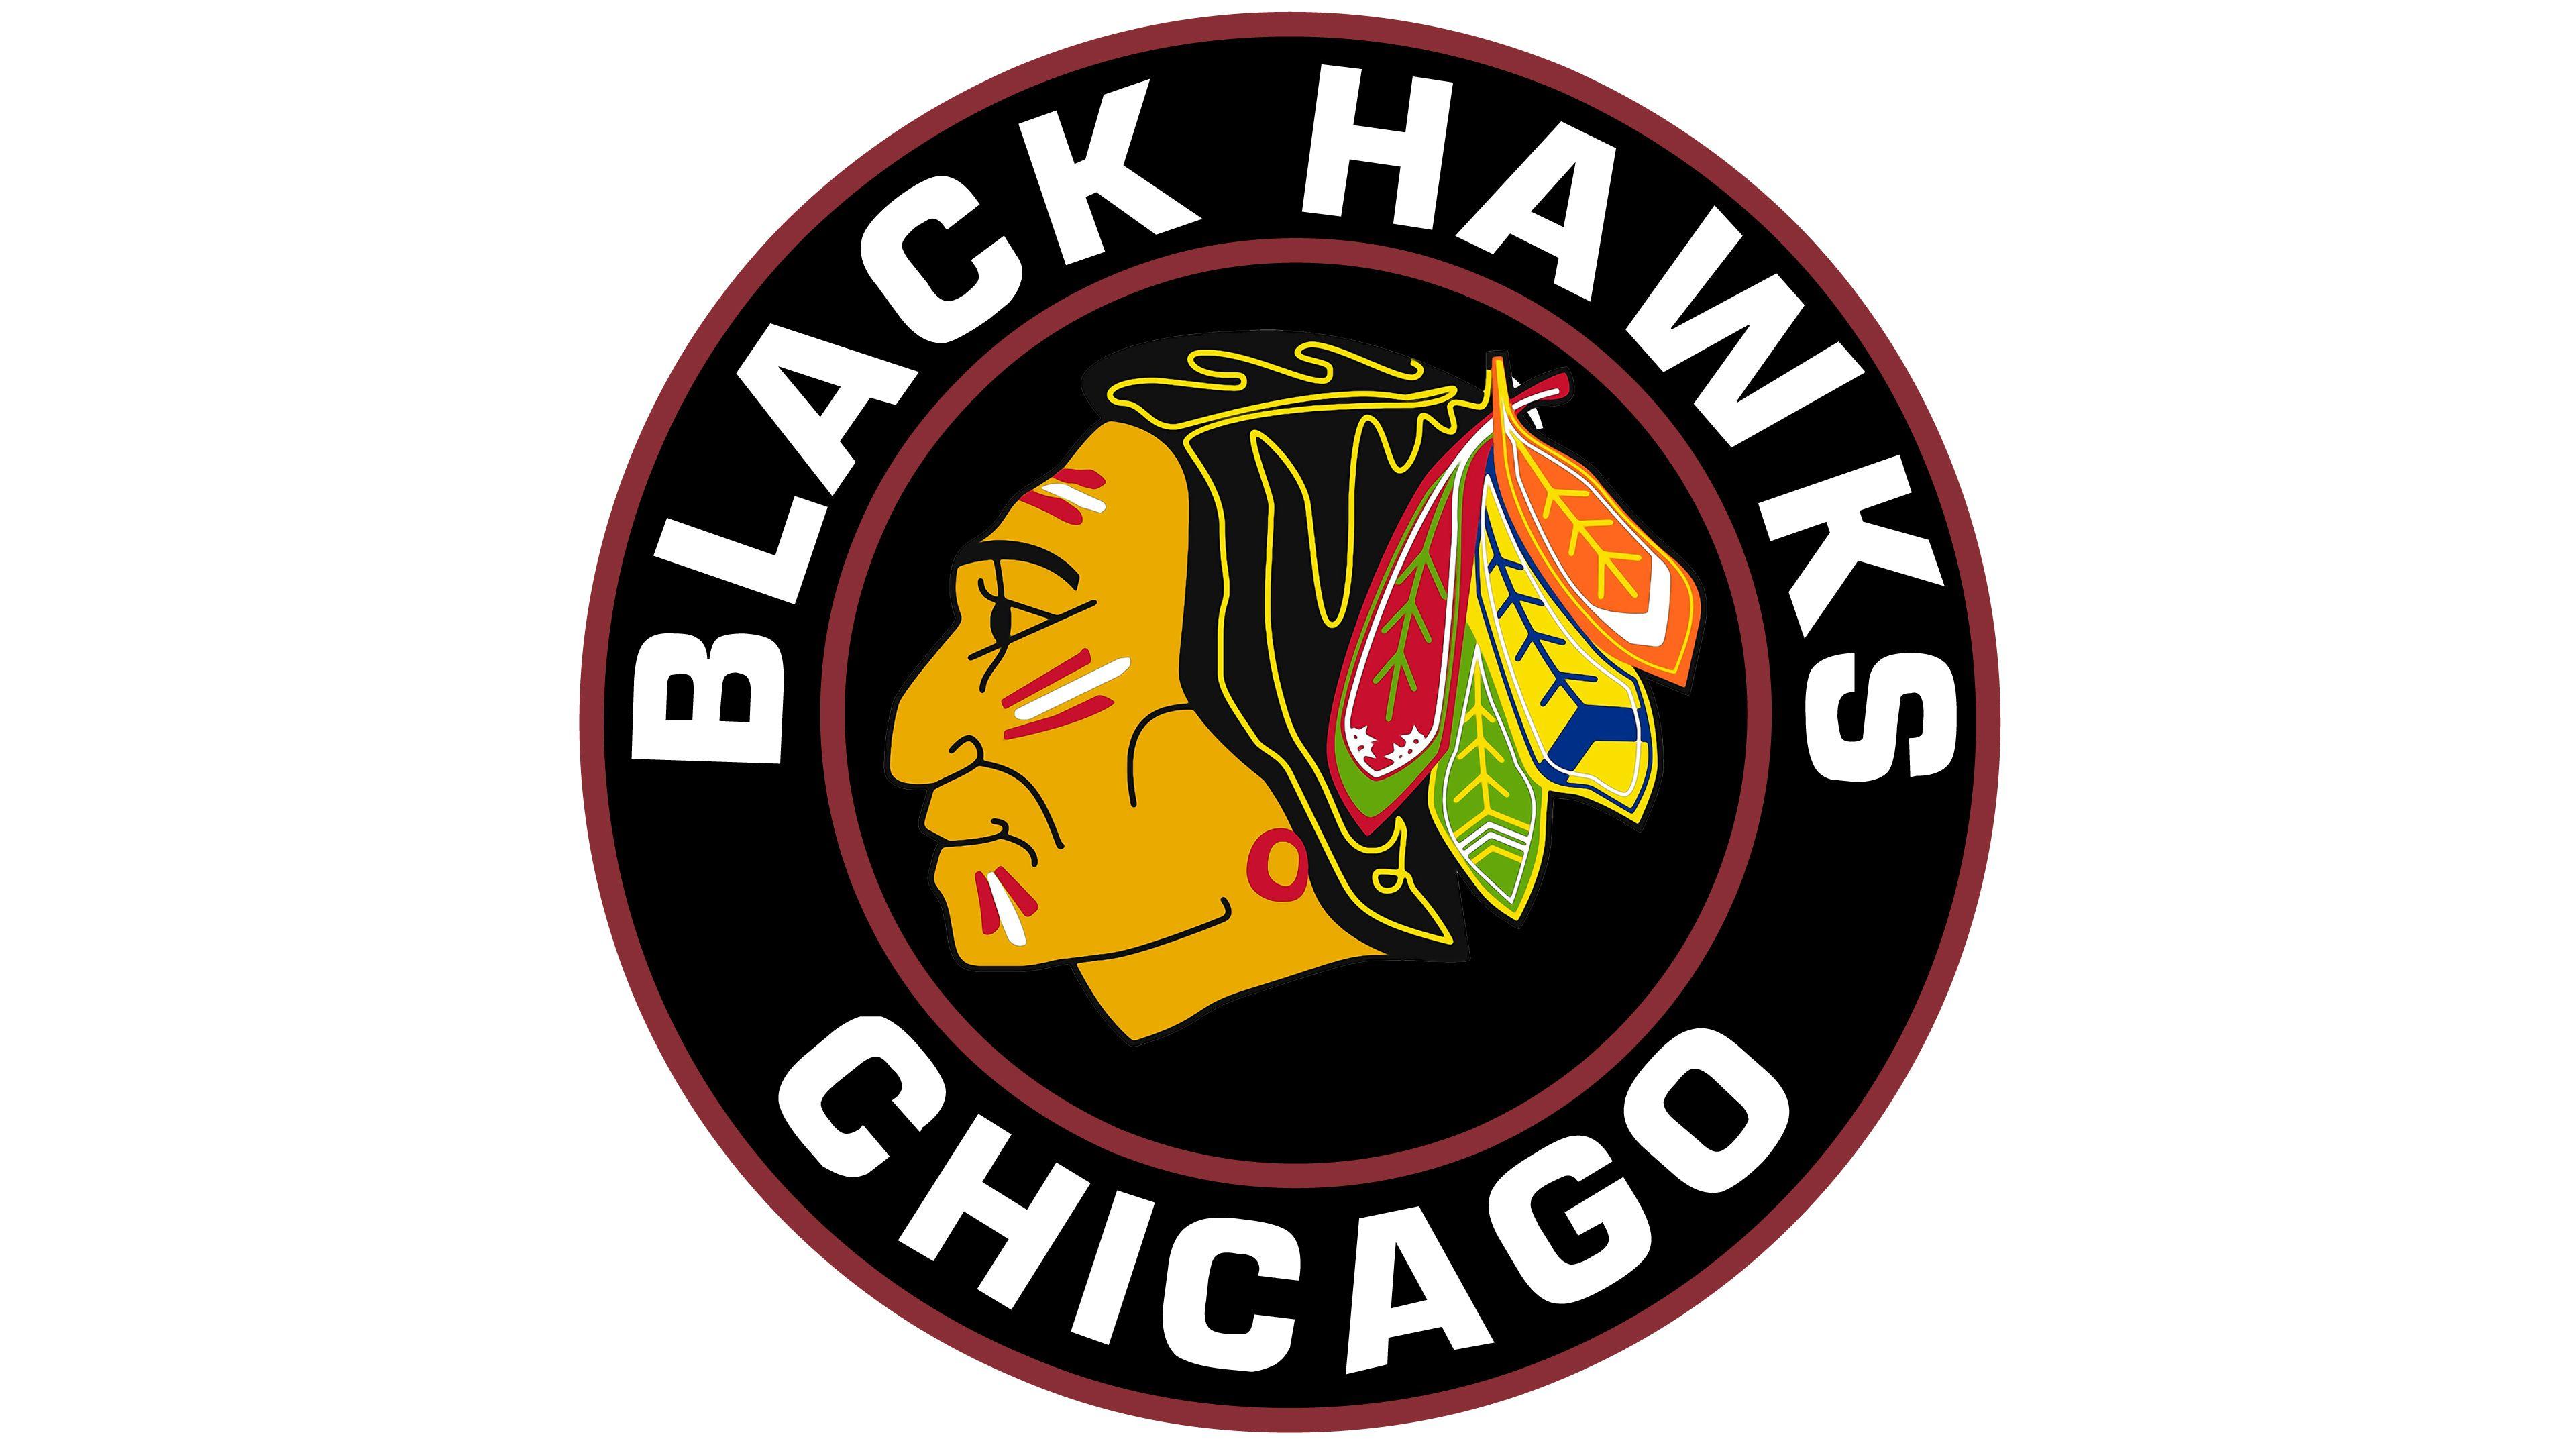 Blackhawks Logo - Chicago Blackhawks logo History Team Name and emblem